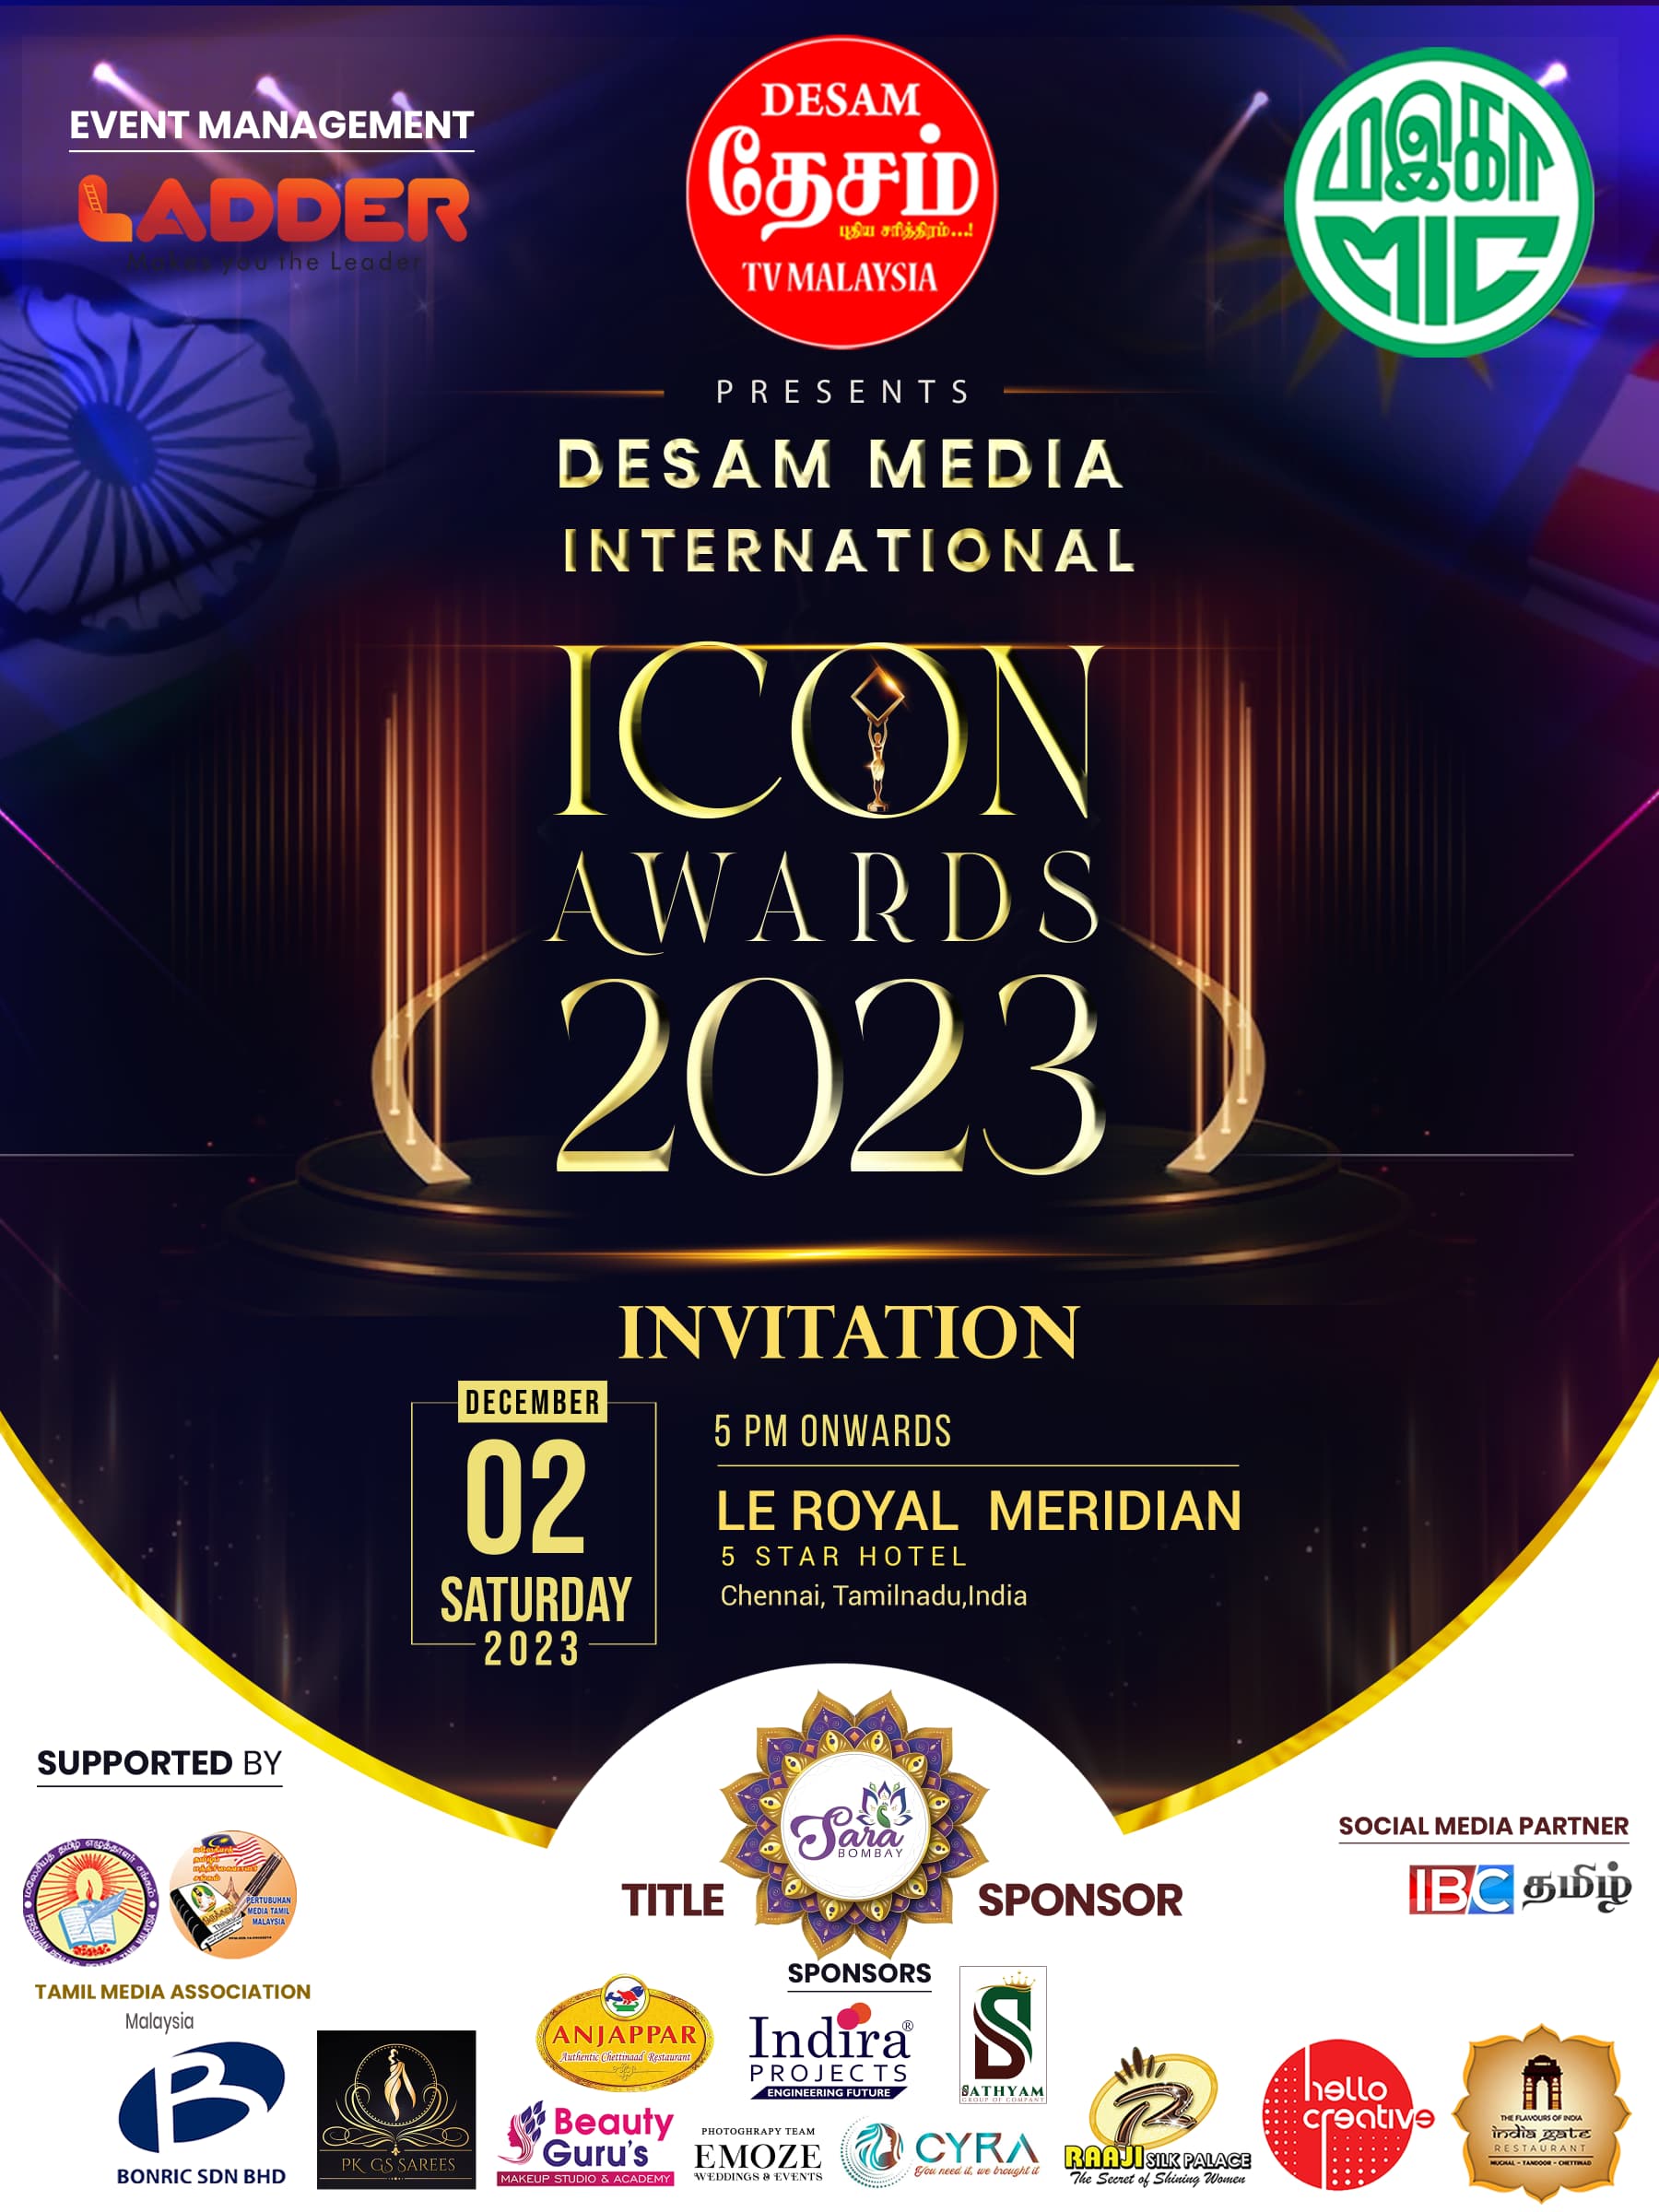 15 pengamal media Malaysia terima anugerah Desam Award 2023